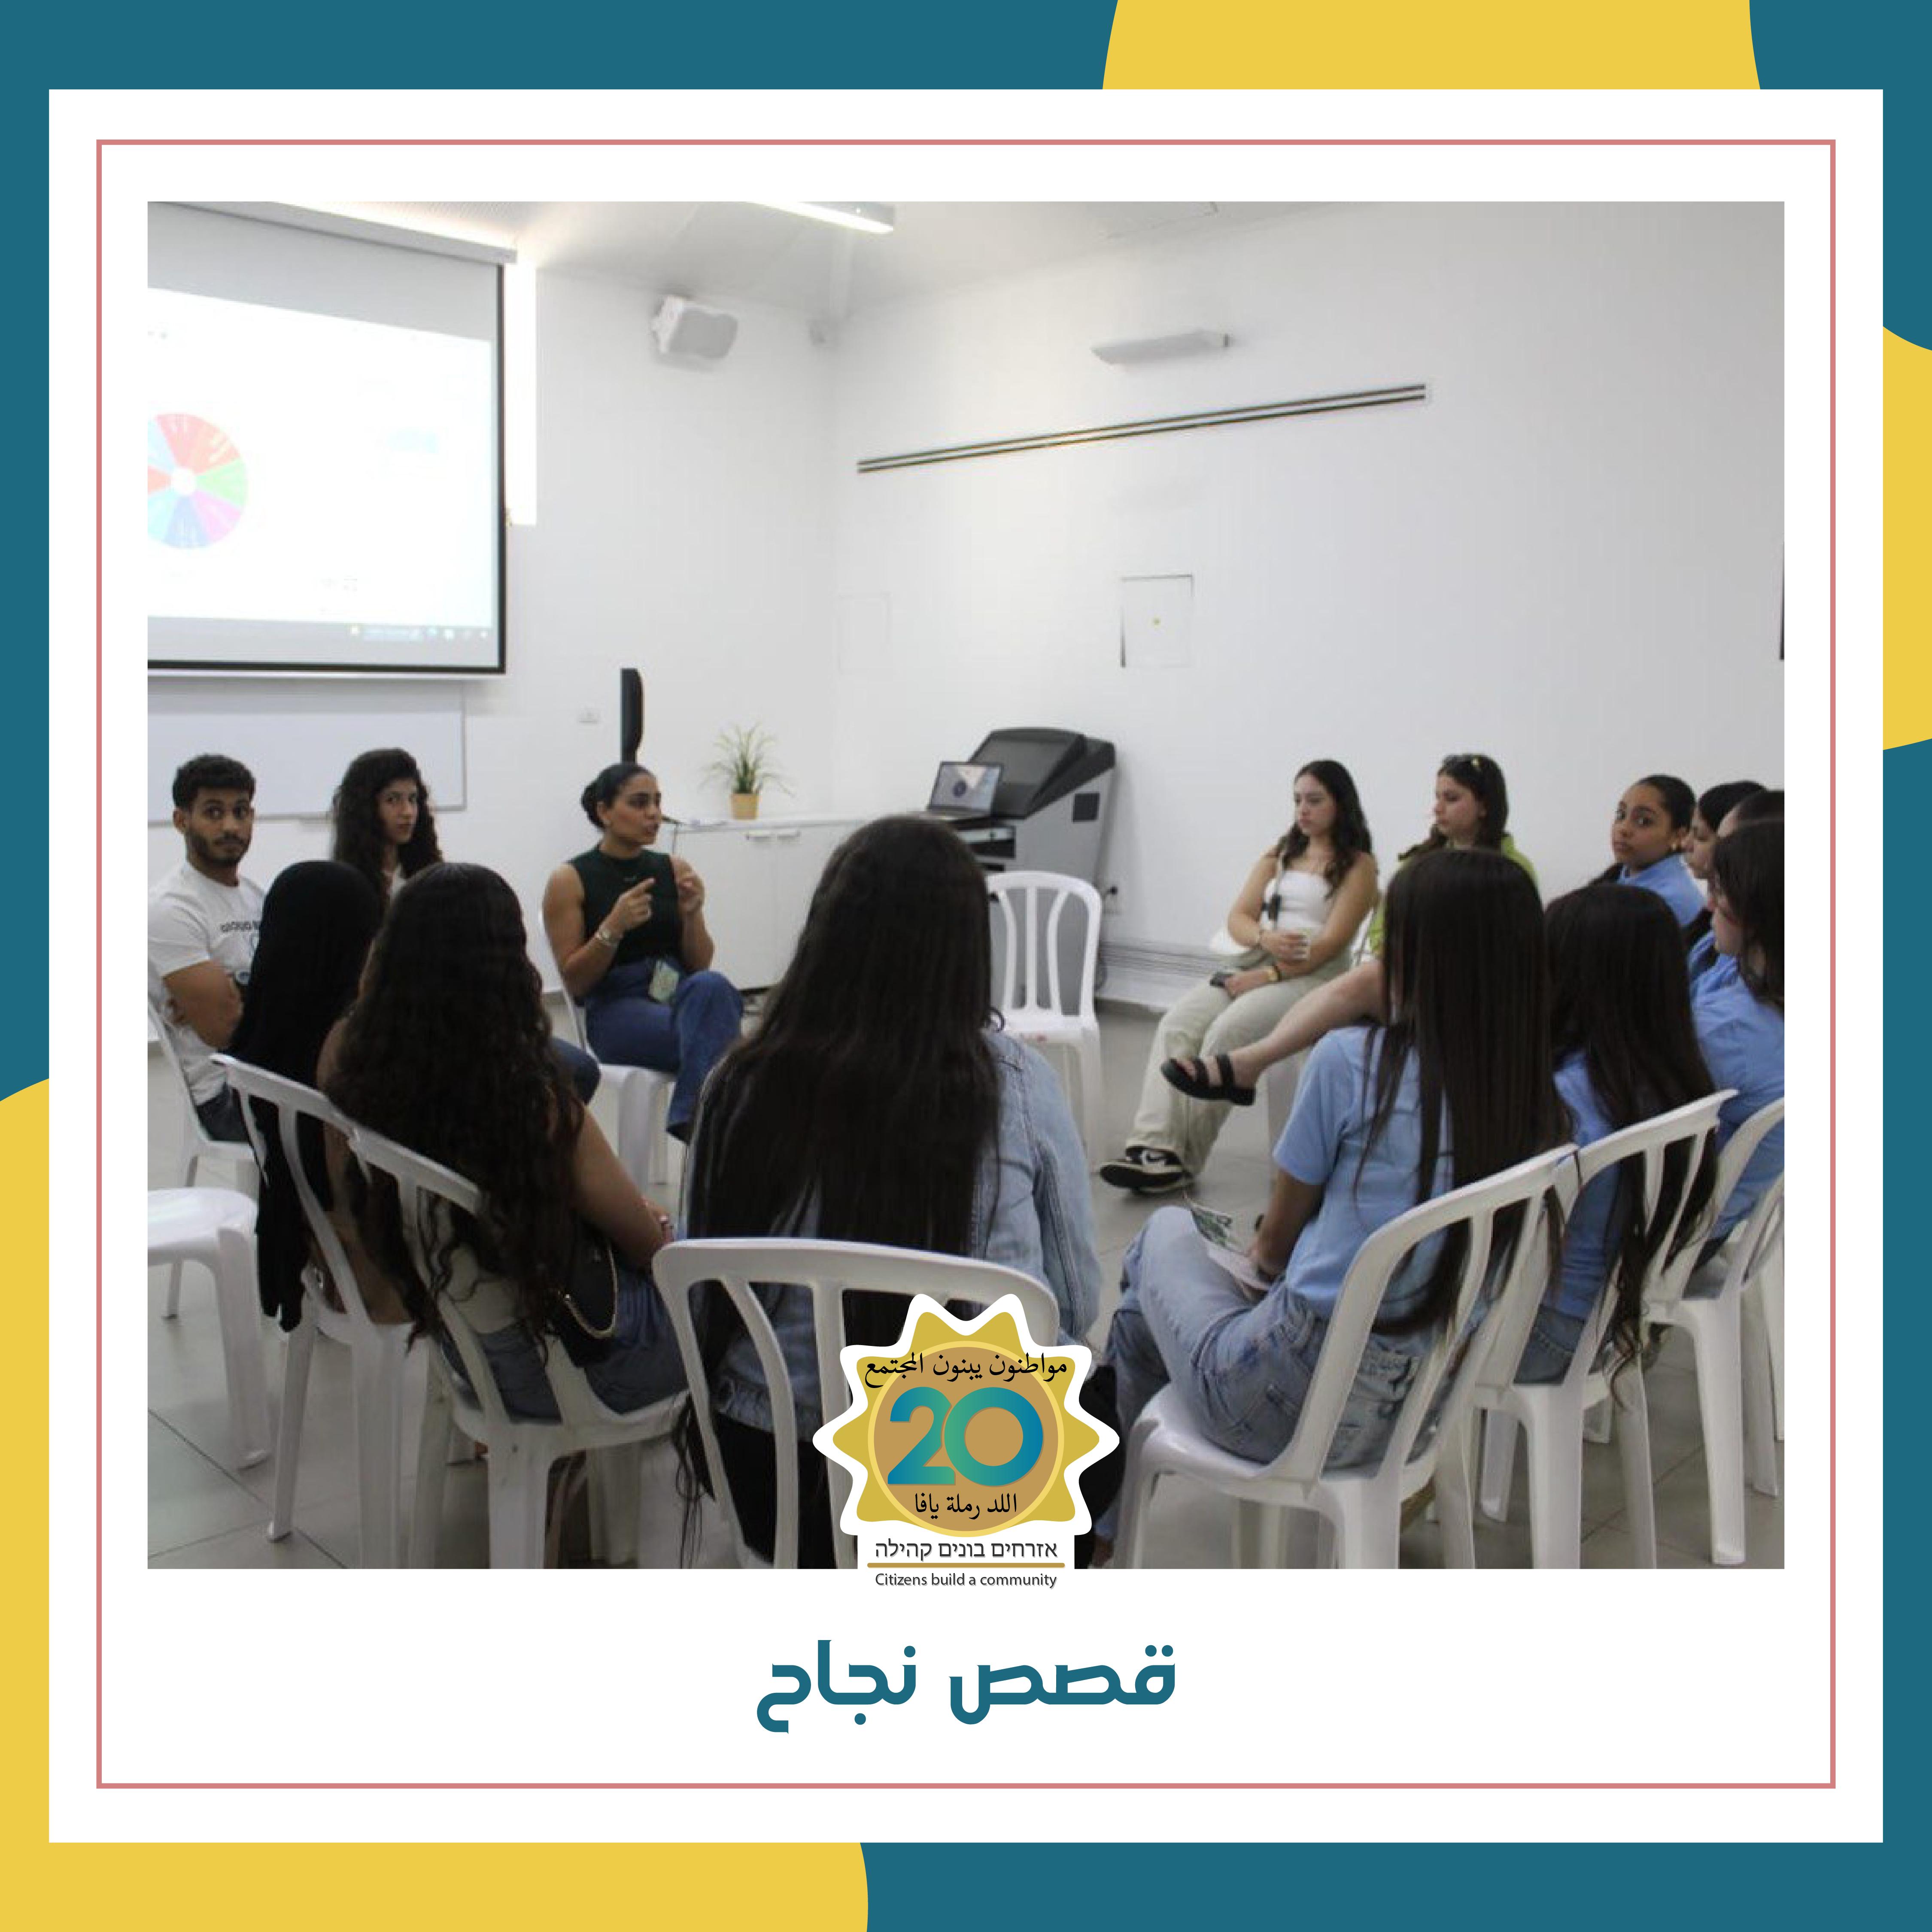 جمعية مواطنون يبنون مجتمع تُنظم معارض للتعليم العالي الاكاديمي في يافا واللد